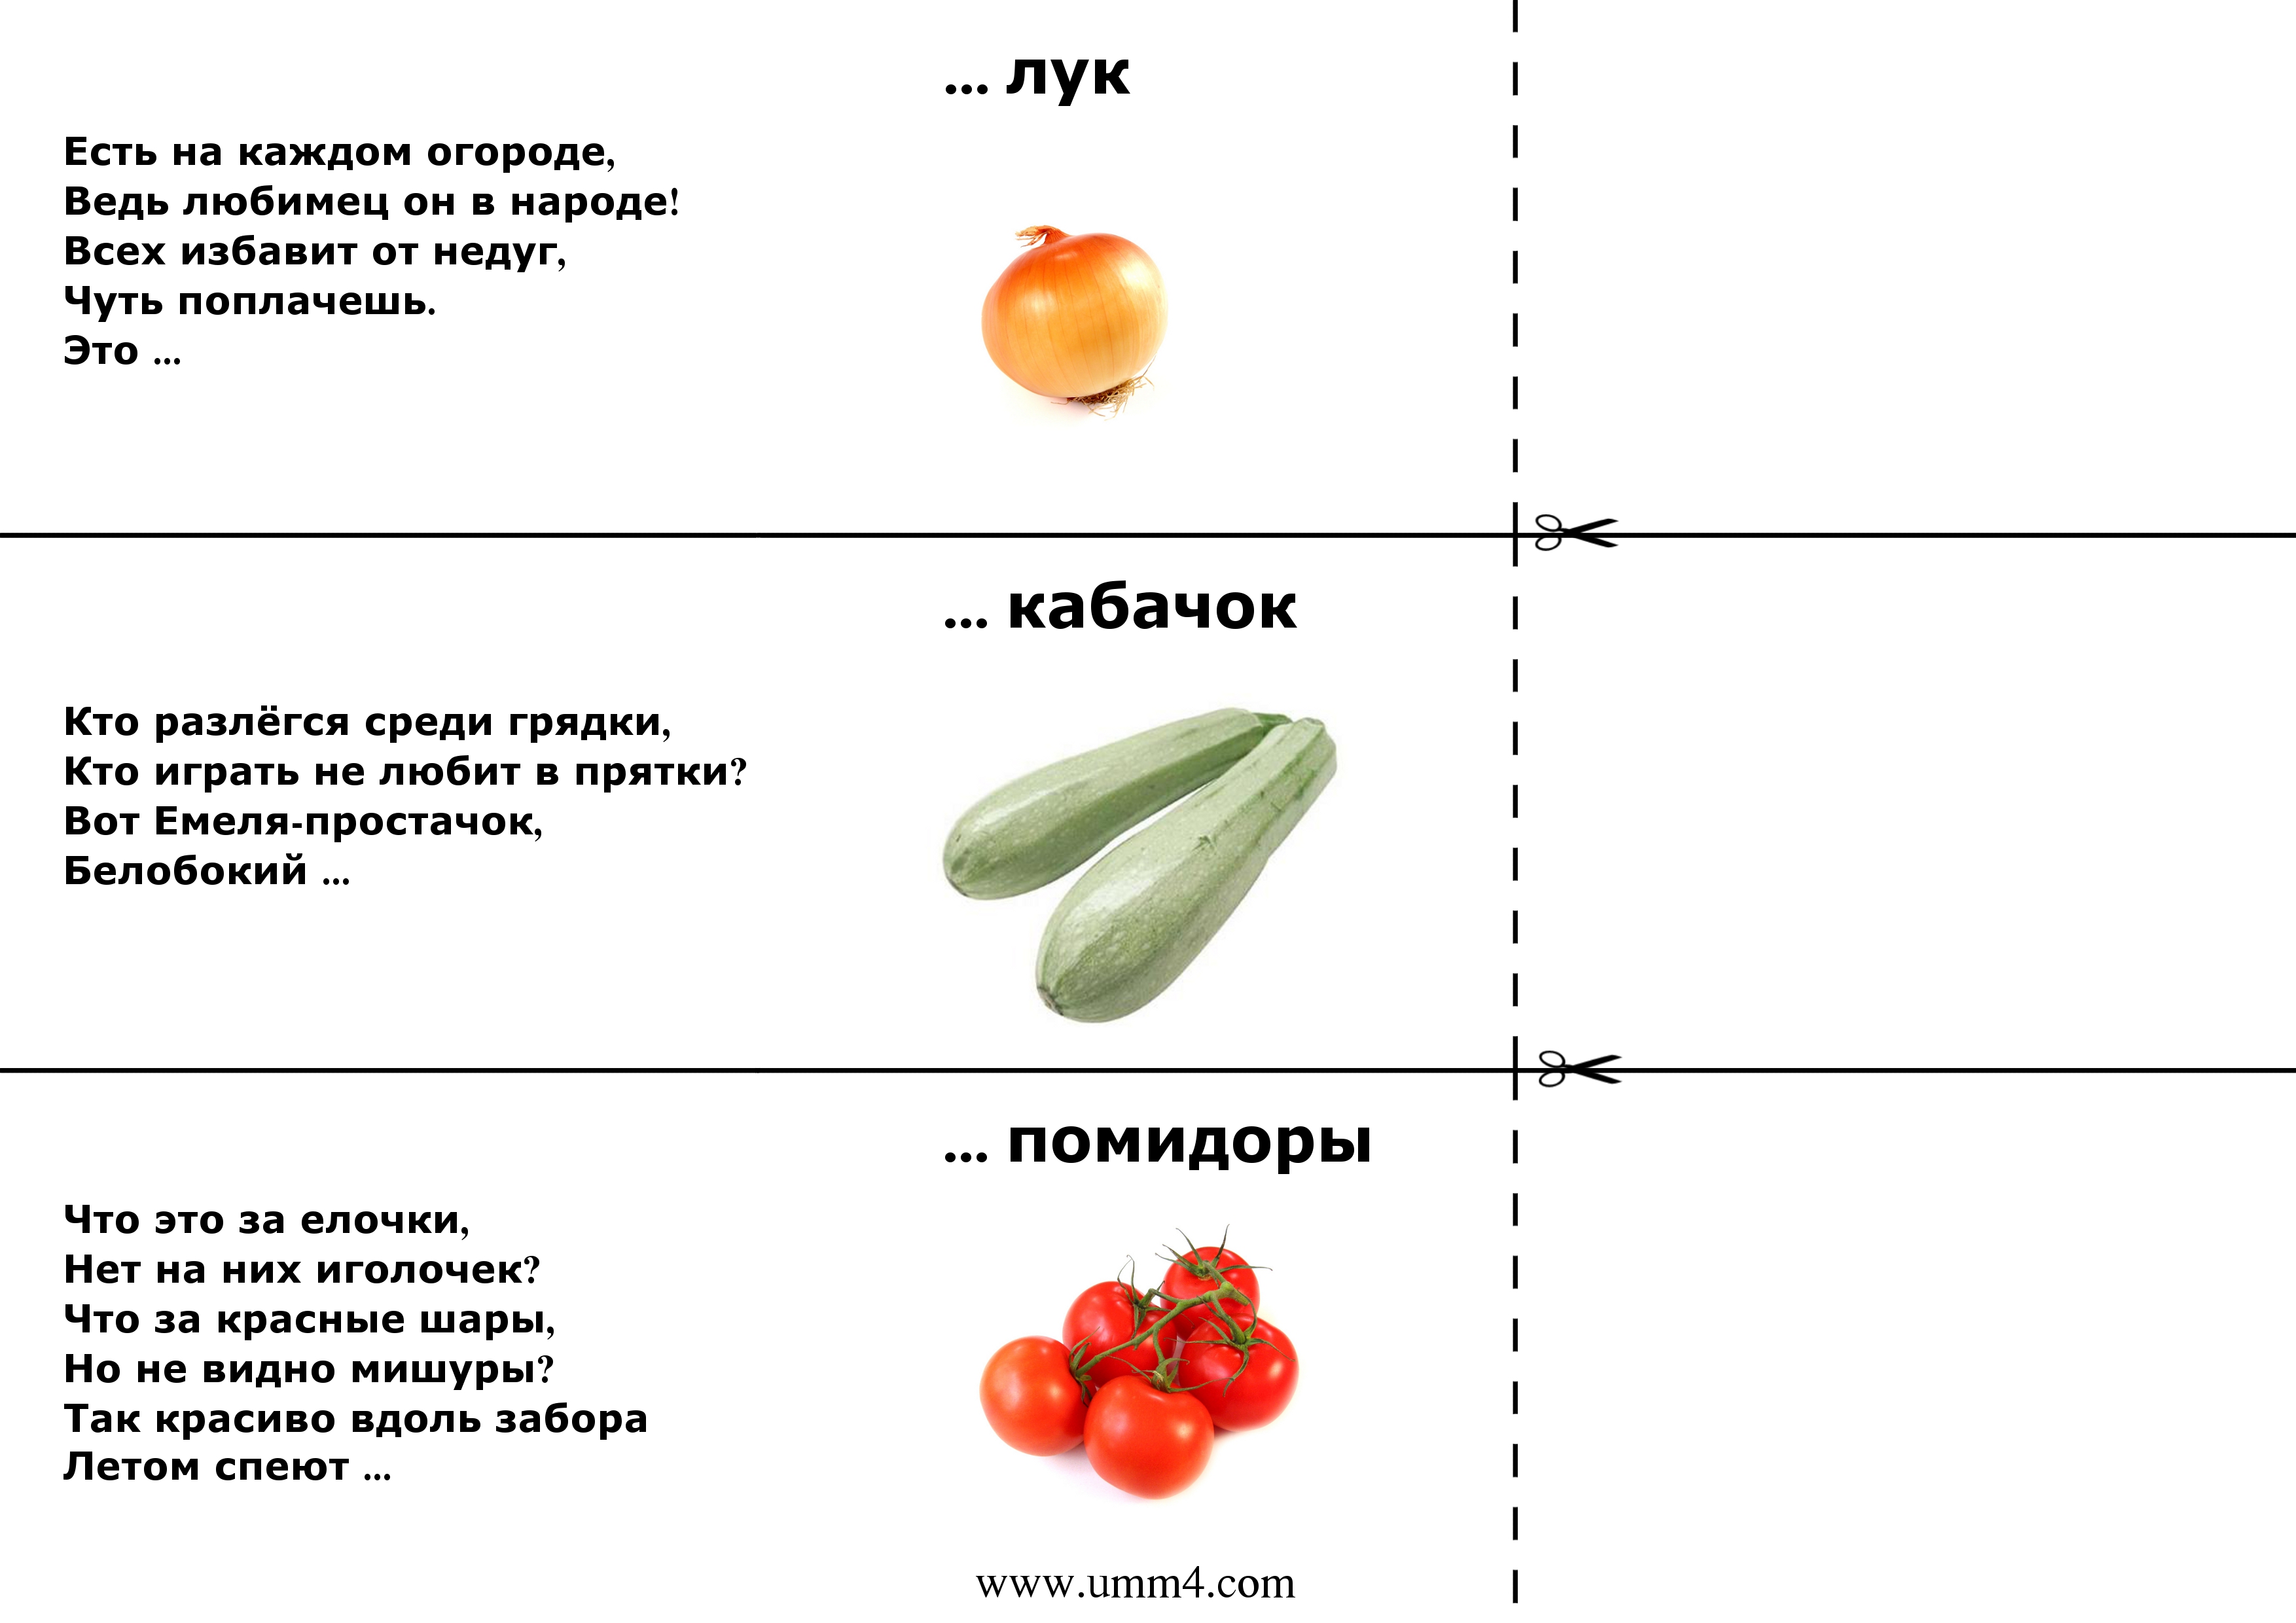 Загадки про картофель (картошку) для детей - lipesinka.ru